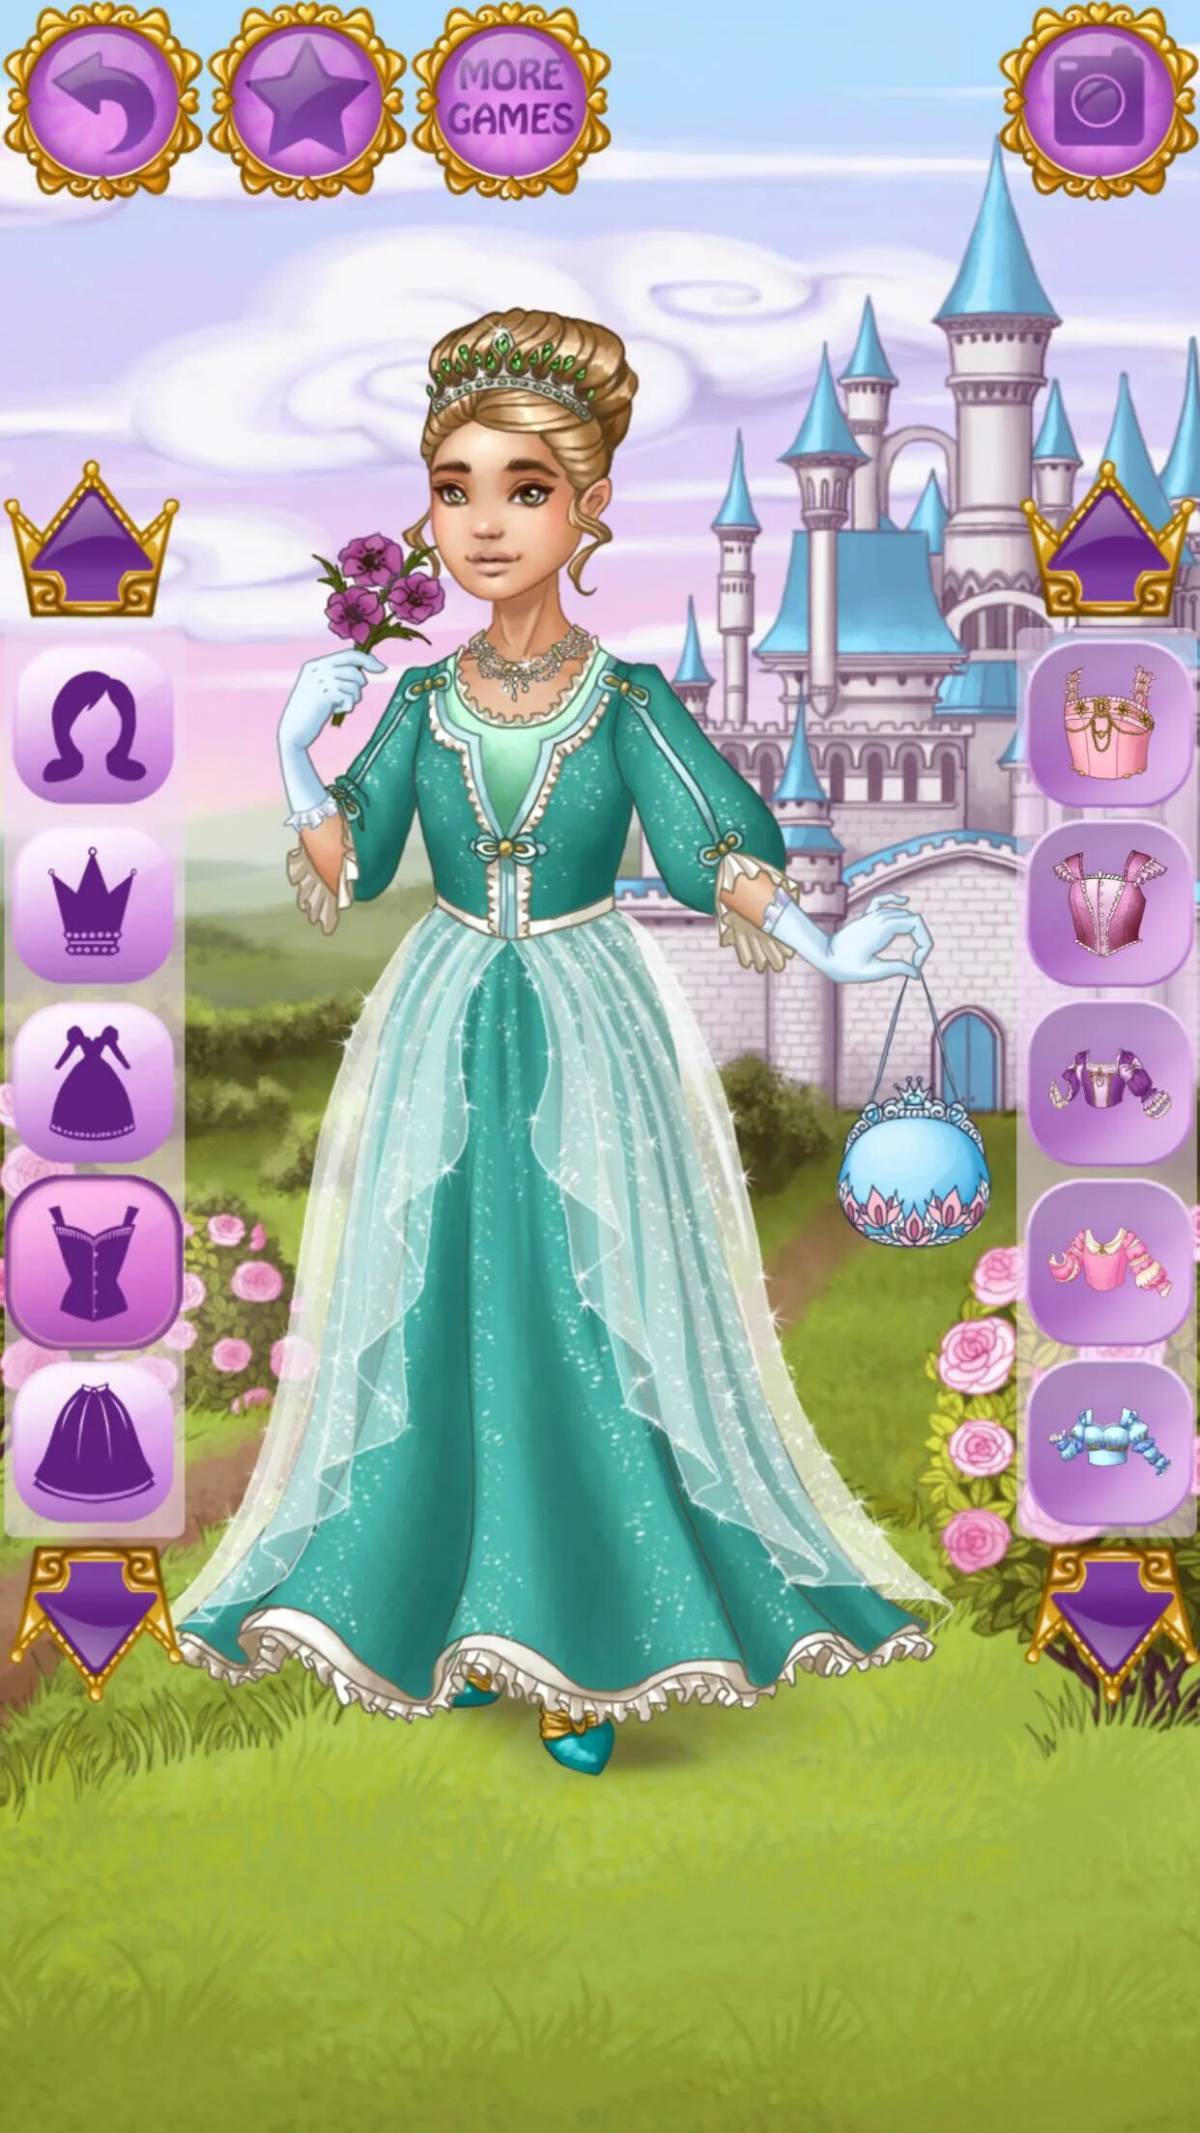 Игра принцессы королевство для Золушки. Time Princess игра. Одевалки для девочек принцессы. Принцесса Казуальные игры.